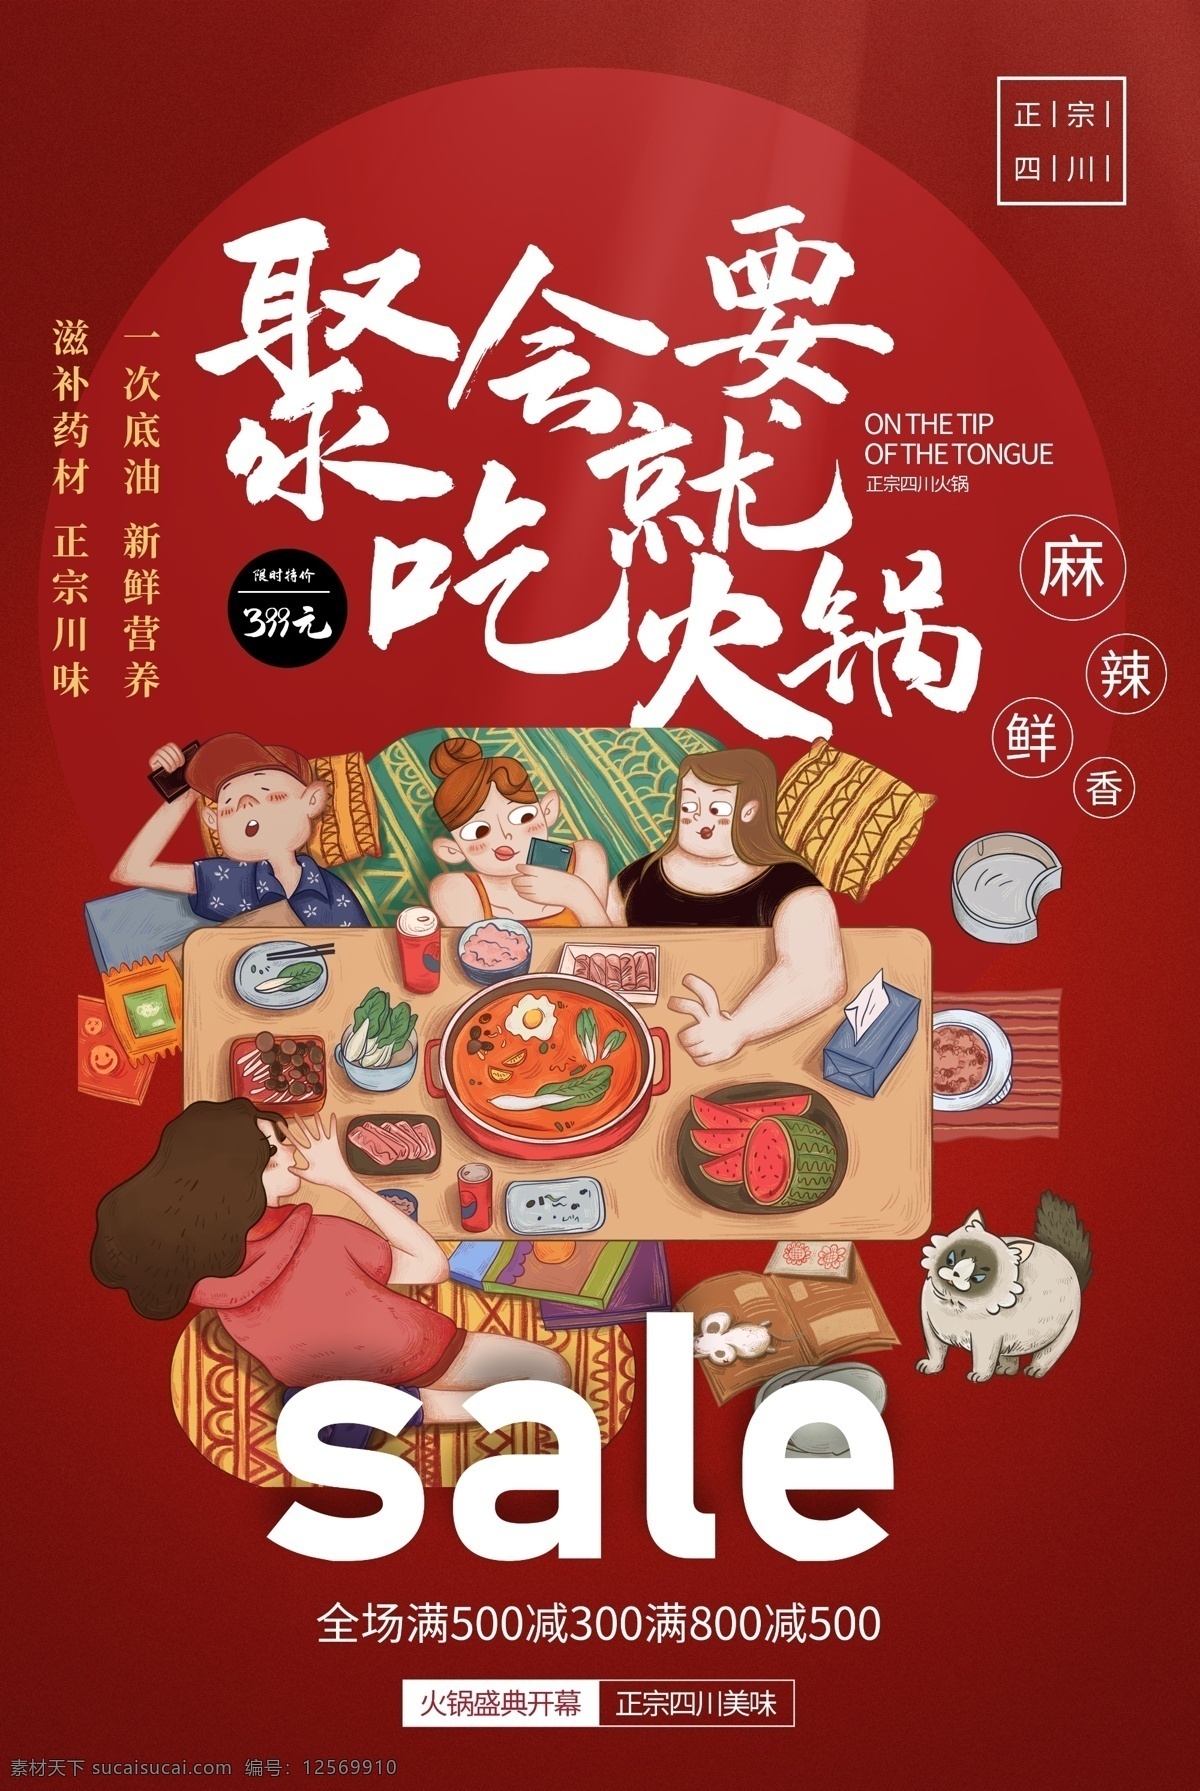 聚会 活动 火锅 插画 宣传海报 宣传 海报 餐饮美食 类